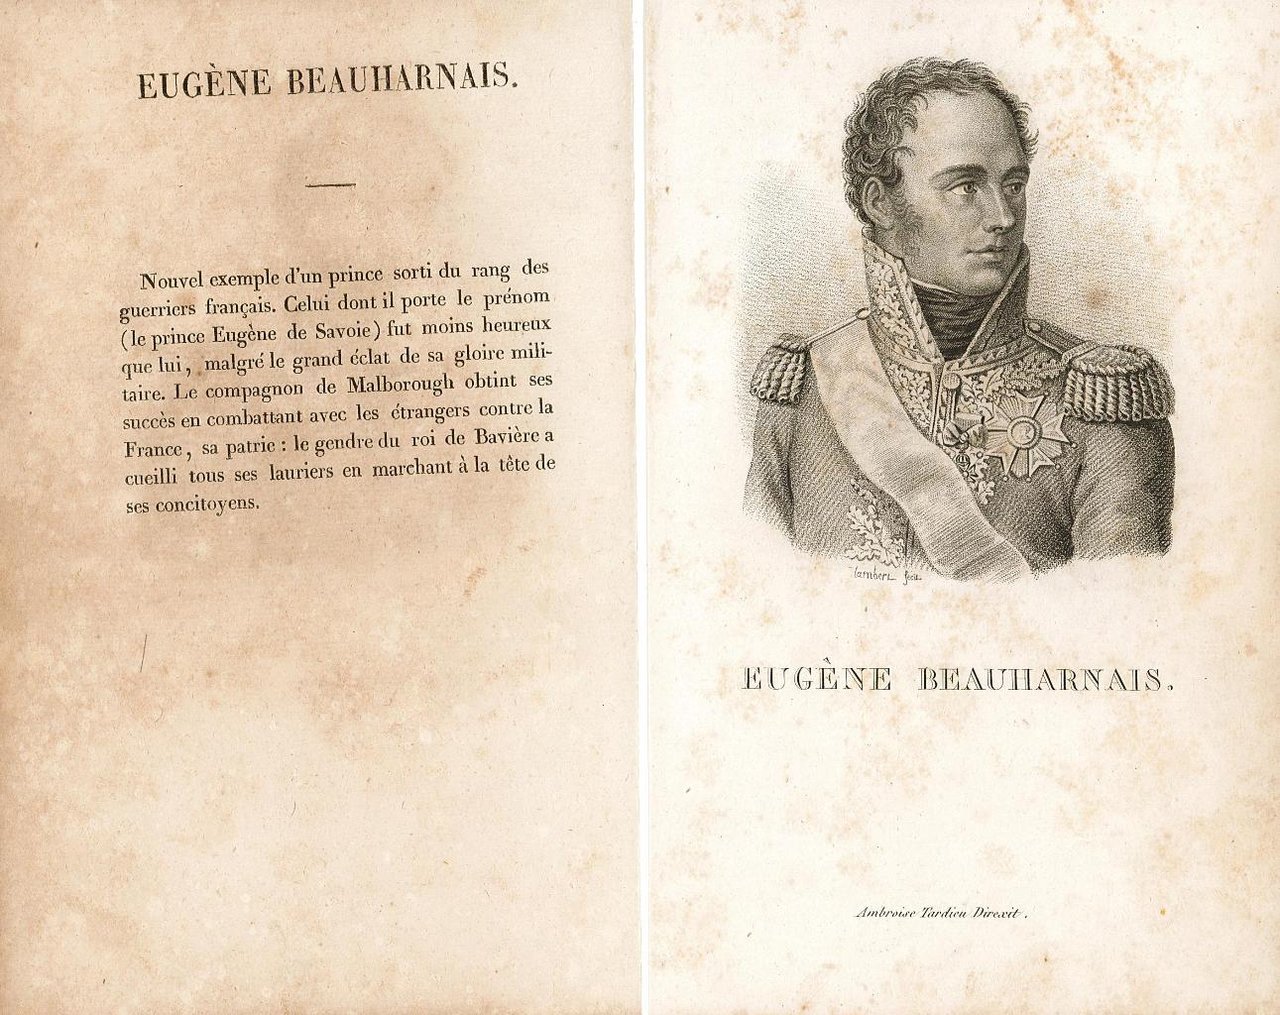 Eugène Beauharnais